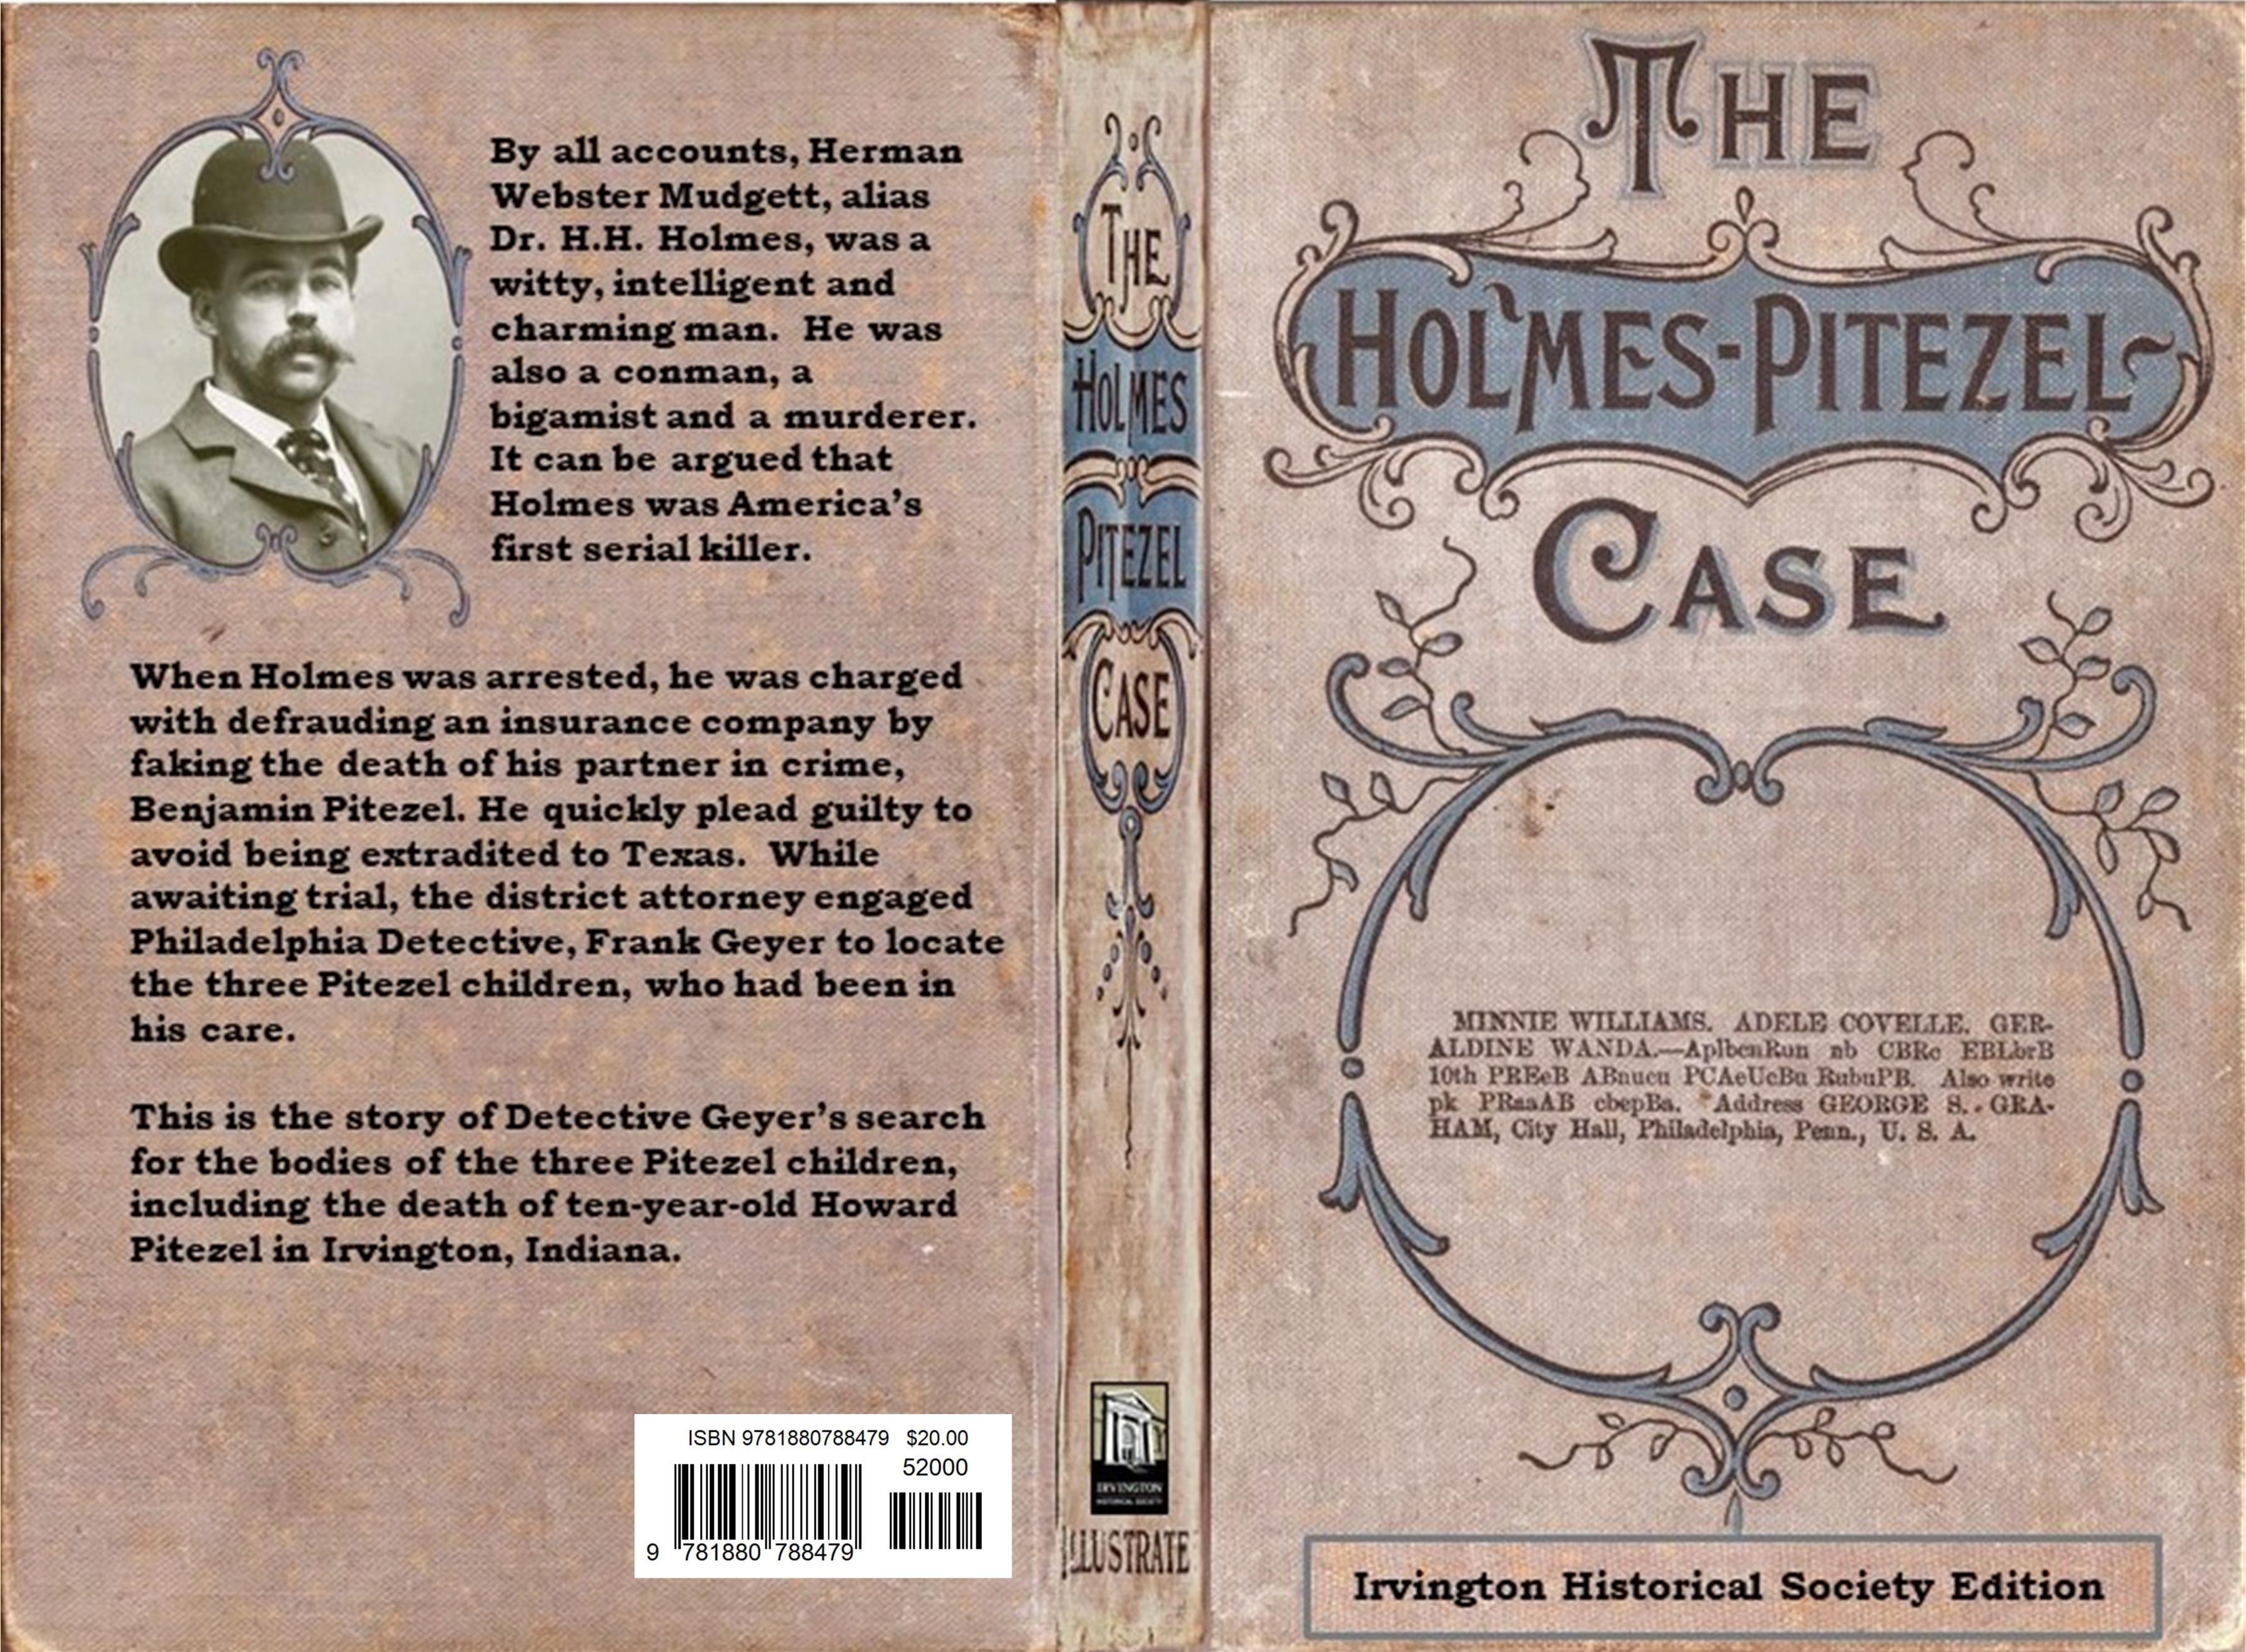 The Holmes - Pitezel Case cover image